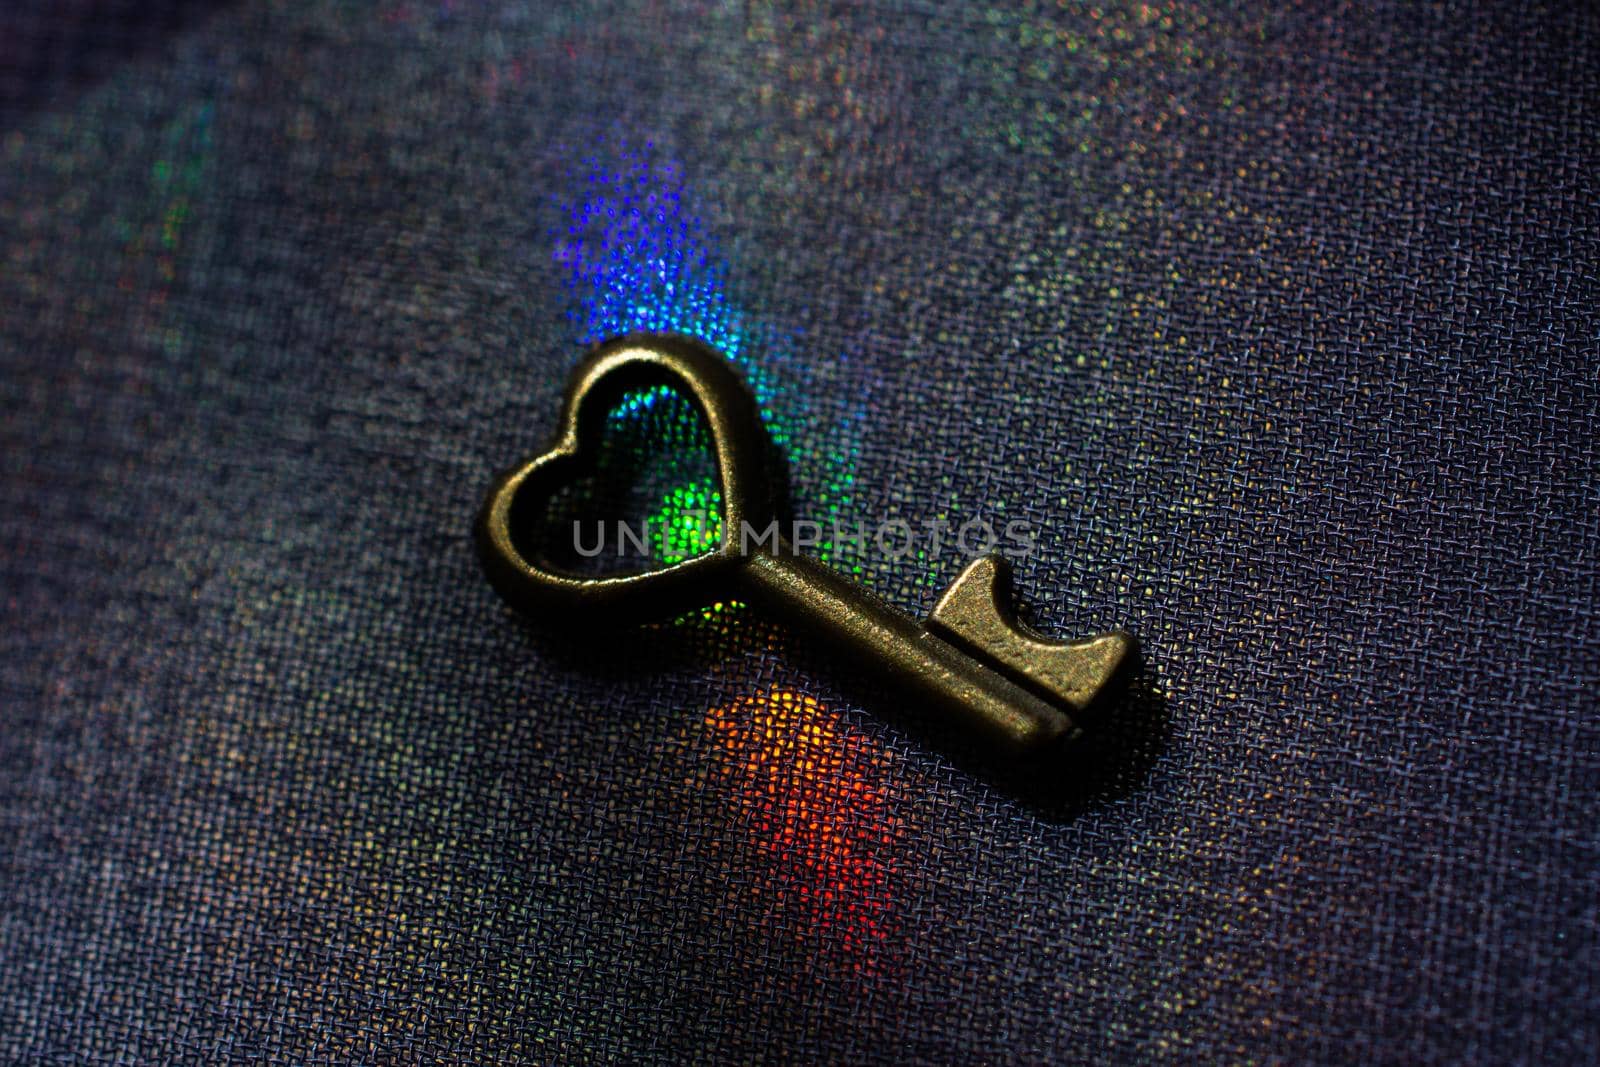 Vintage key. .Antique key. Retro key on colorful fabric background